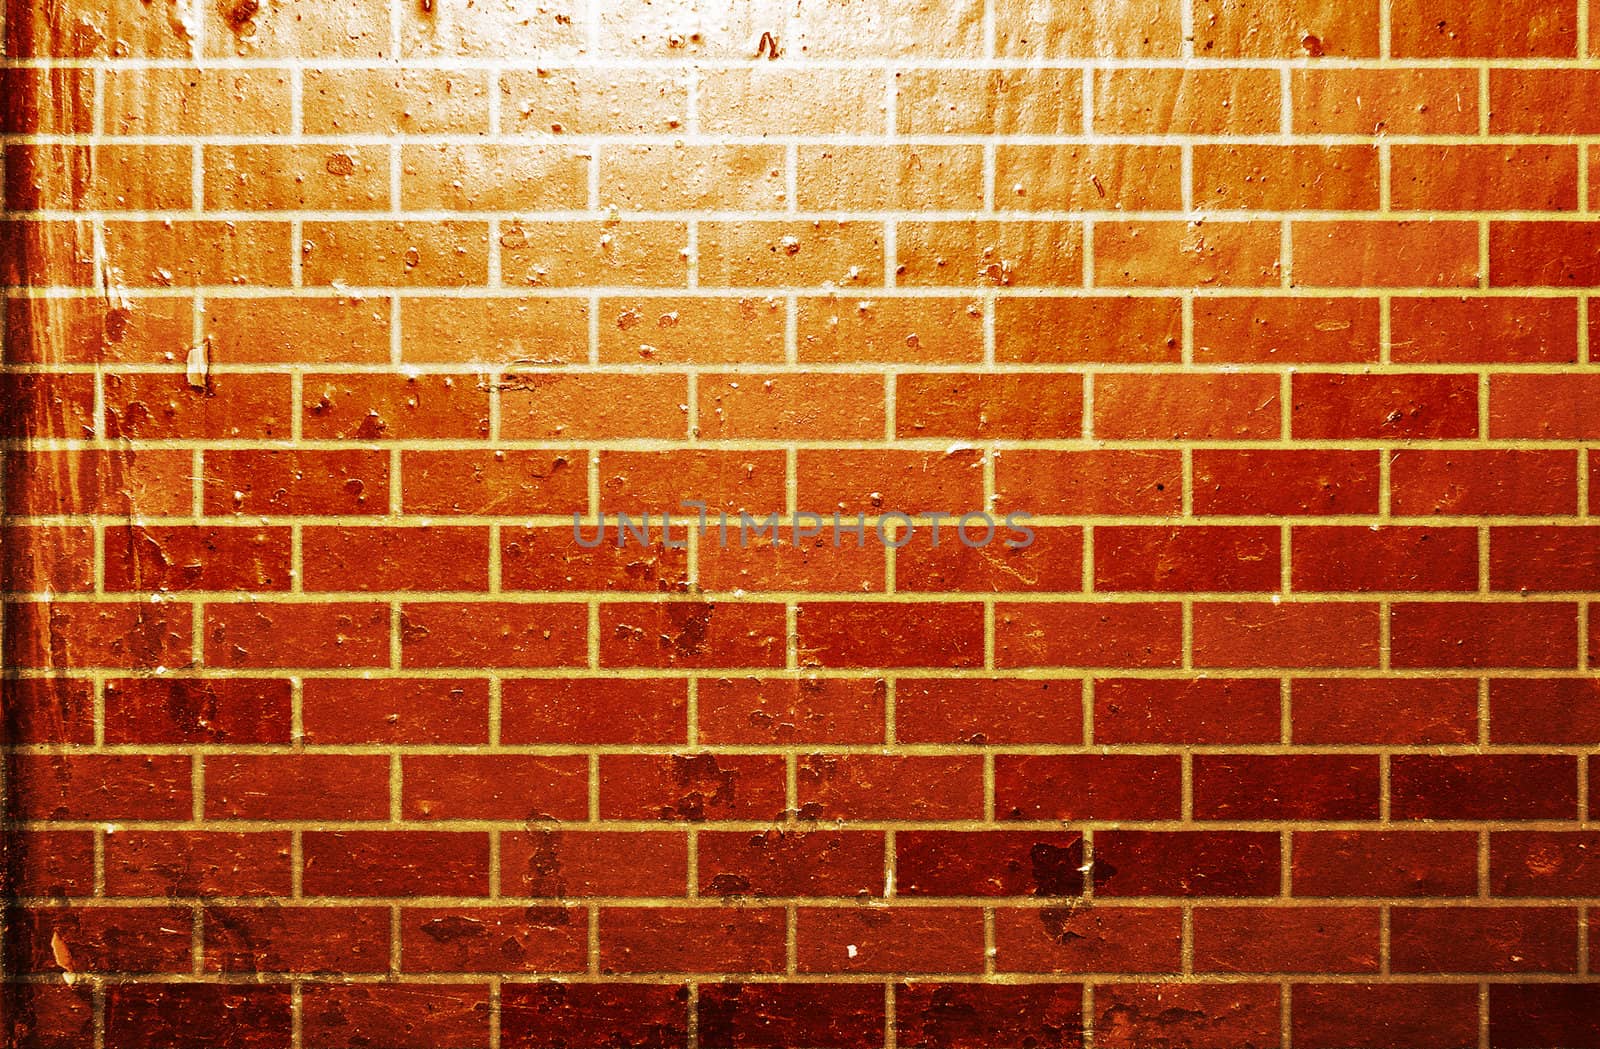 Grunge style brick wall